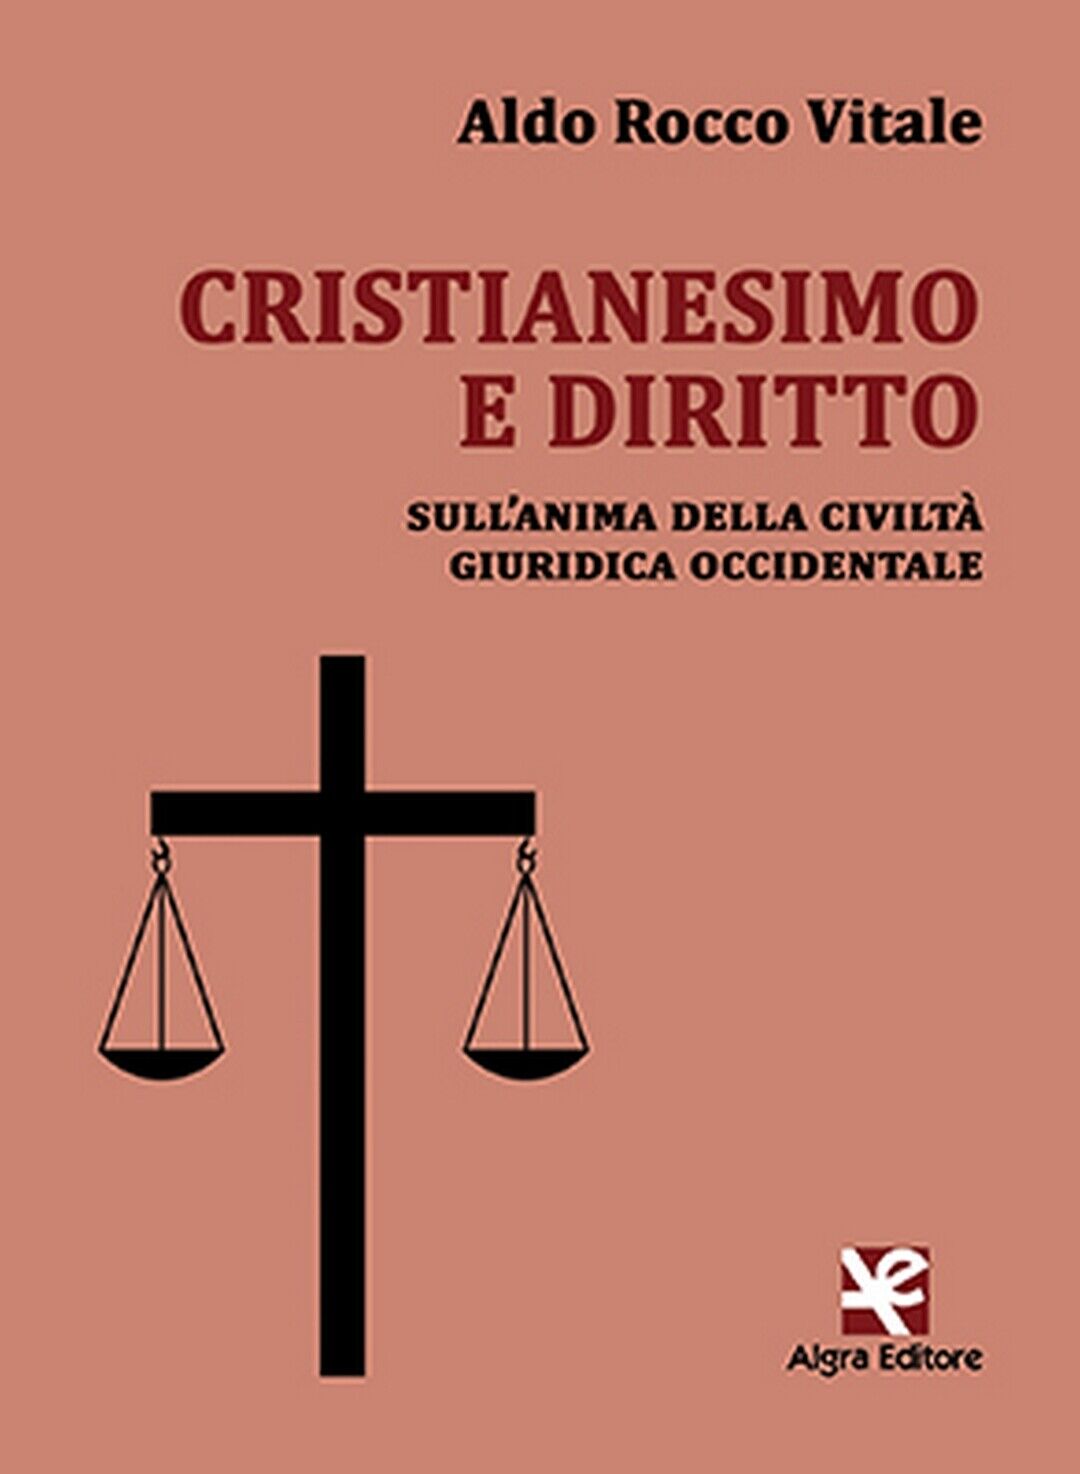 Cristianesimo e diritto  di Aldo Rocco Vitale,  Algra Editore